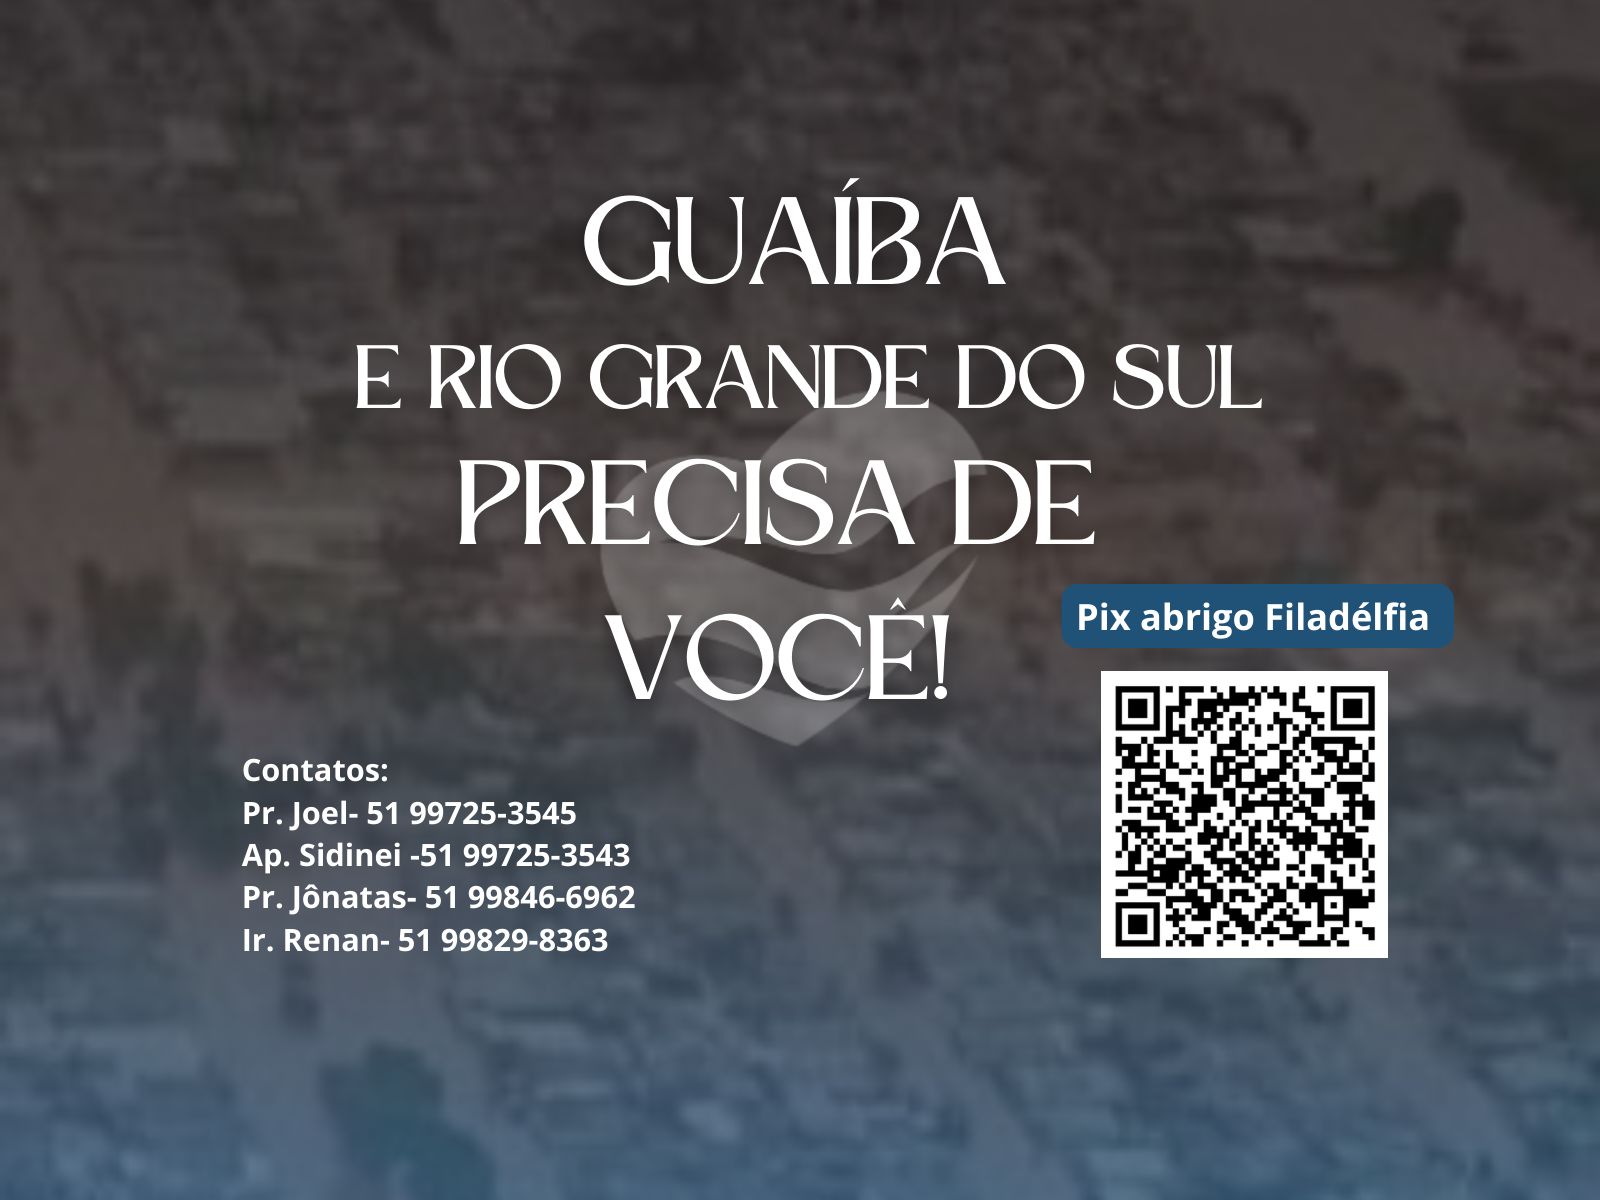 Guaíba e Rio Grande do Sul precisa de você